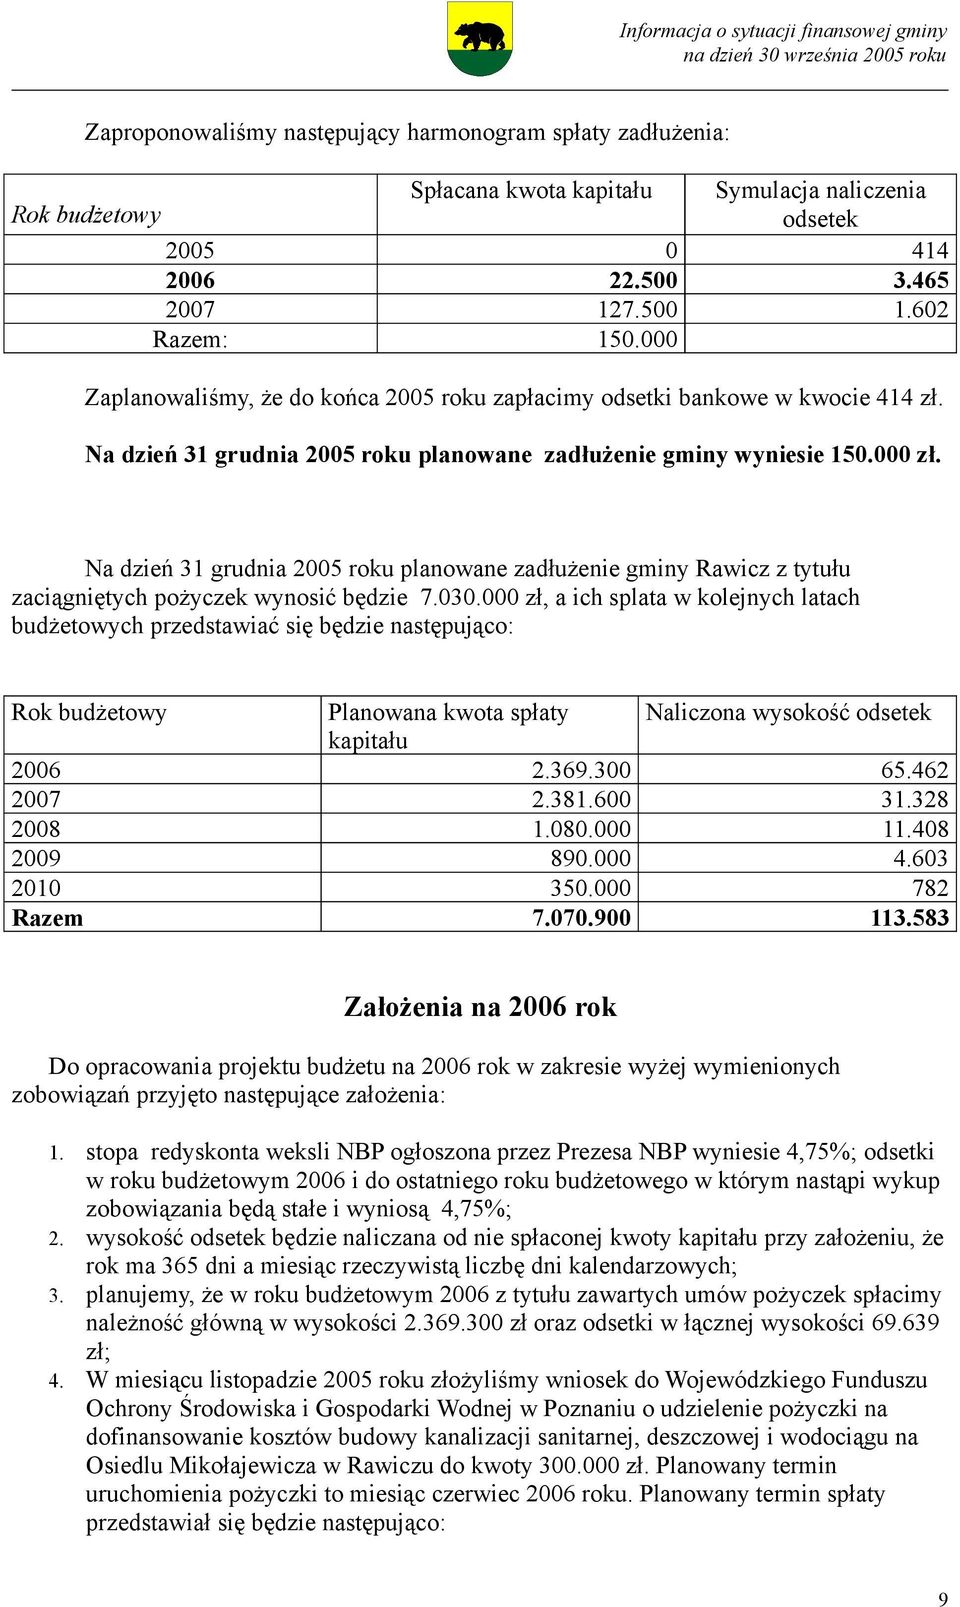 Na dzień 31 grudnia 2005 roku planowane zadłużenie gminy Rawicz z tytułu zaciągniętych pożyczek wynosić będzie 7.030.